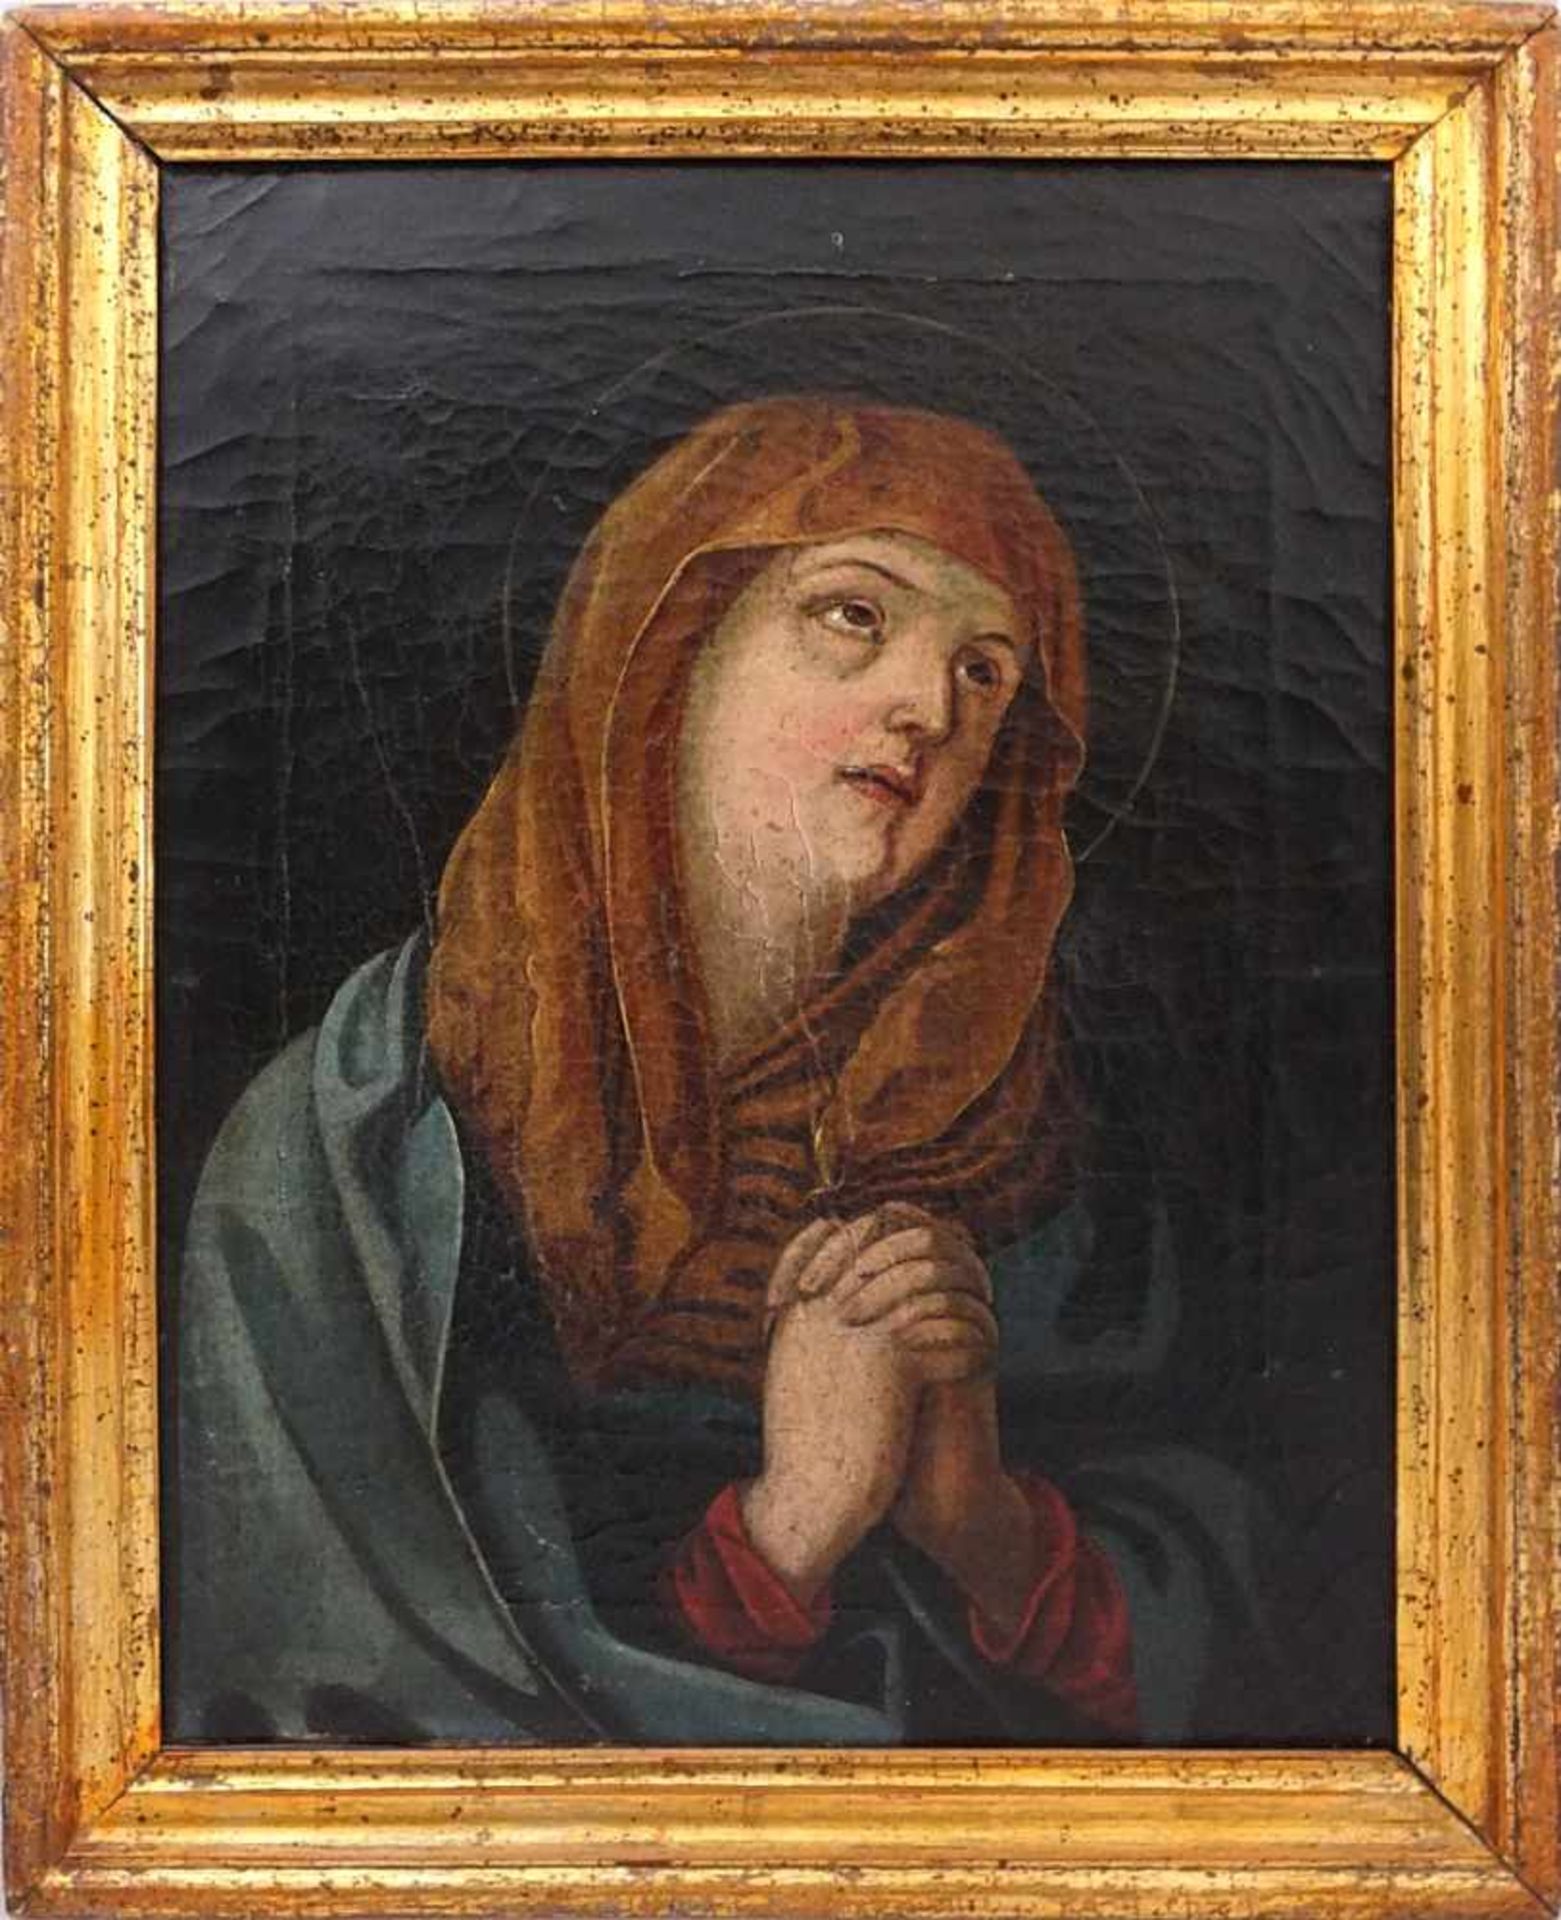 1 Ölgemälde "Betende Maria" wohl 18. Jh.unsign., Öl/Lwd. 33,5x25cm, Craquelé, min. besch., Asp. - Image 2 of 2